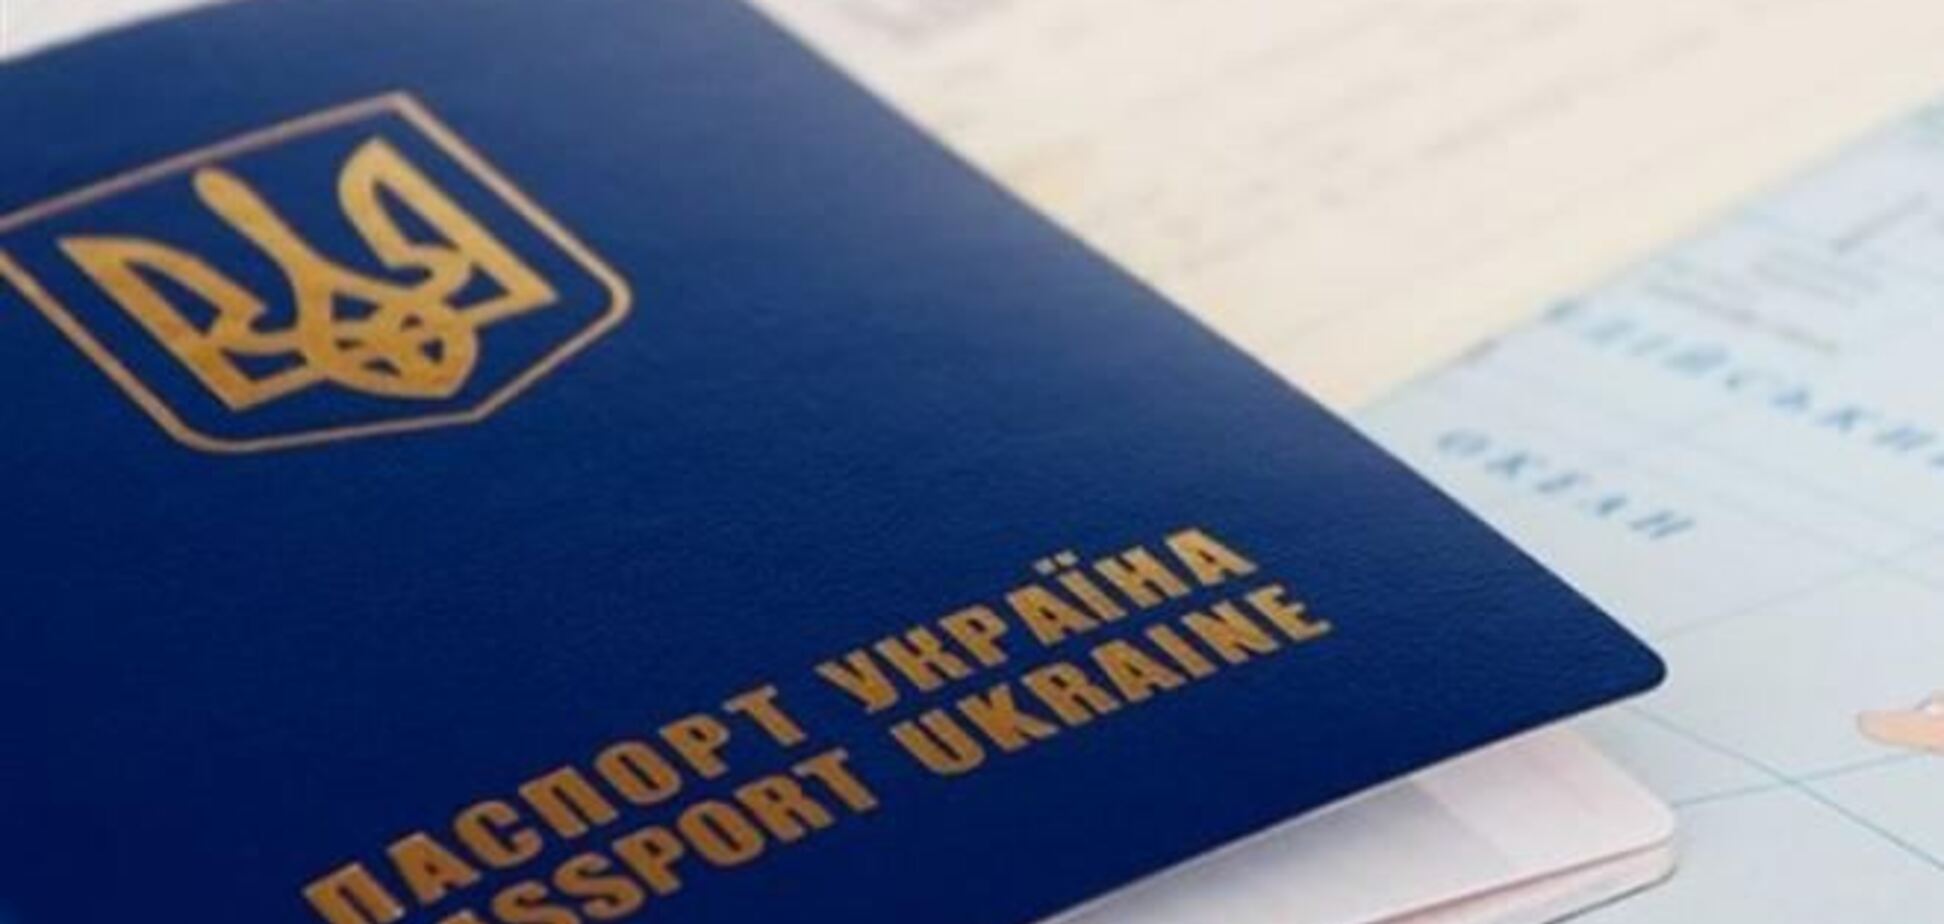 Держміграції анулювала бланки паспортів у Криму